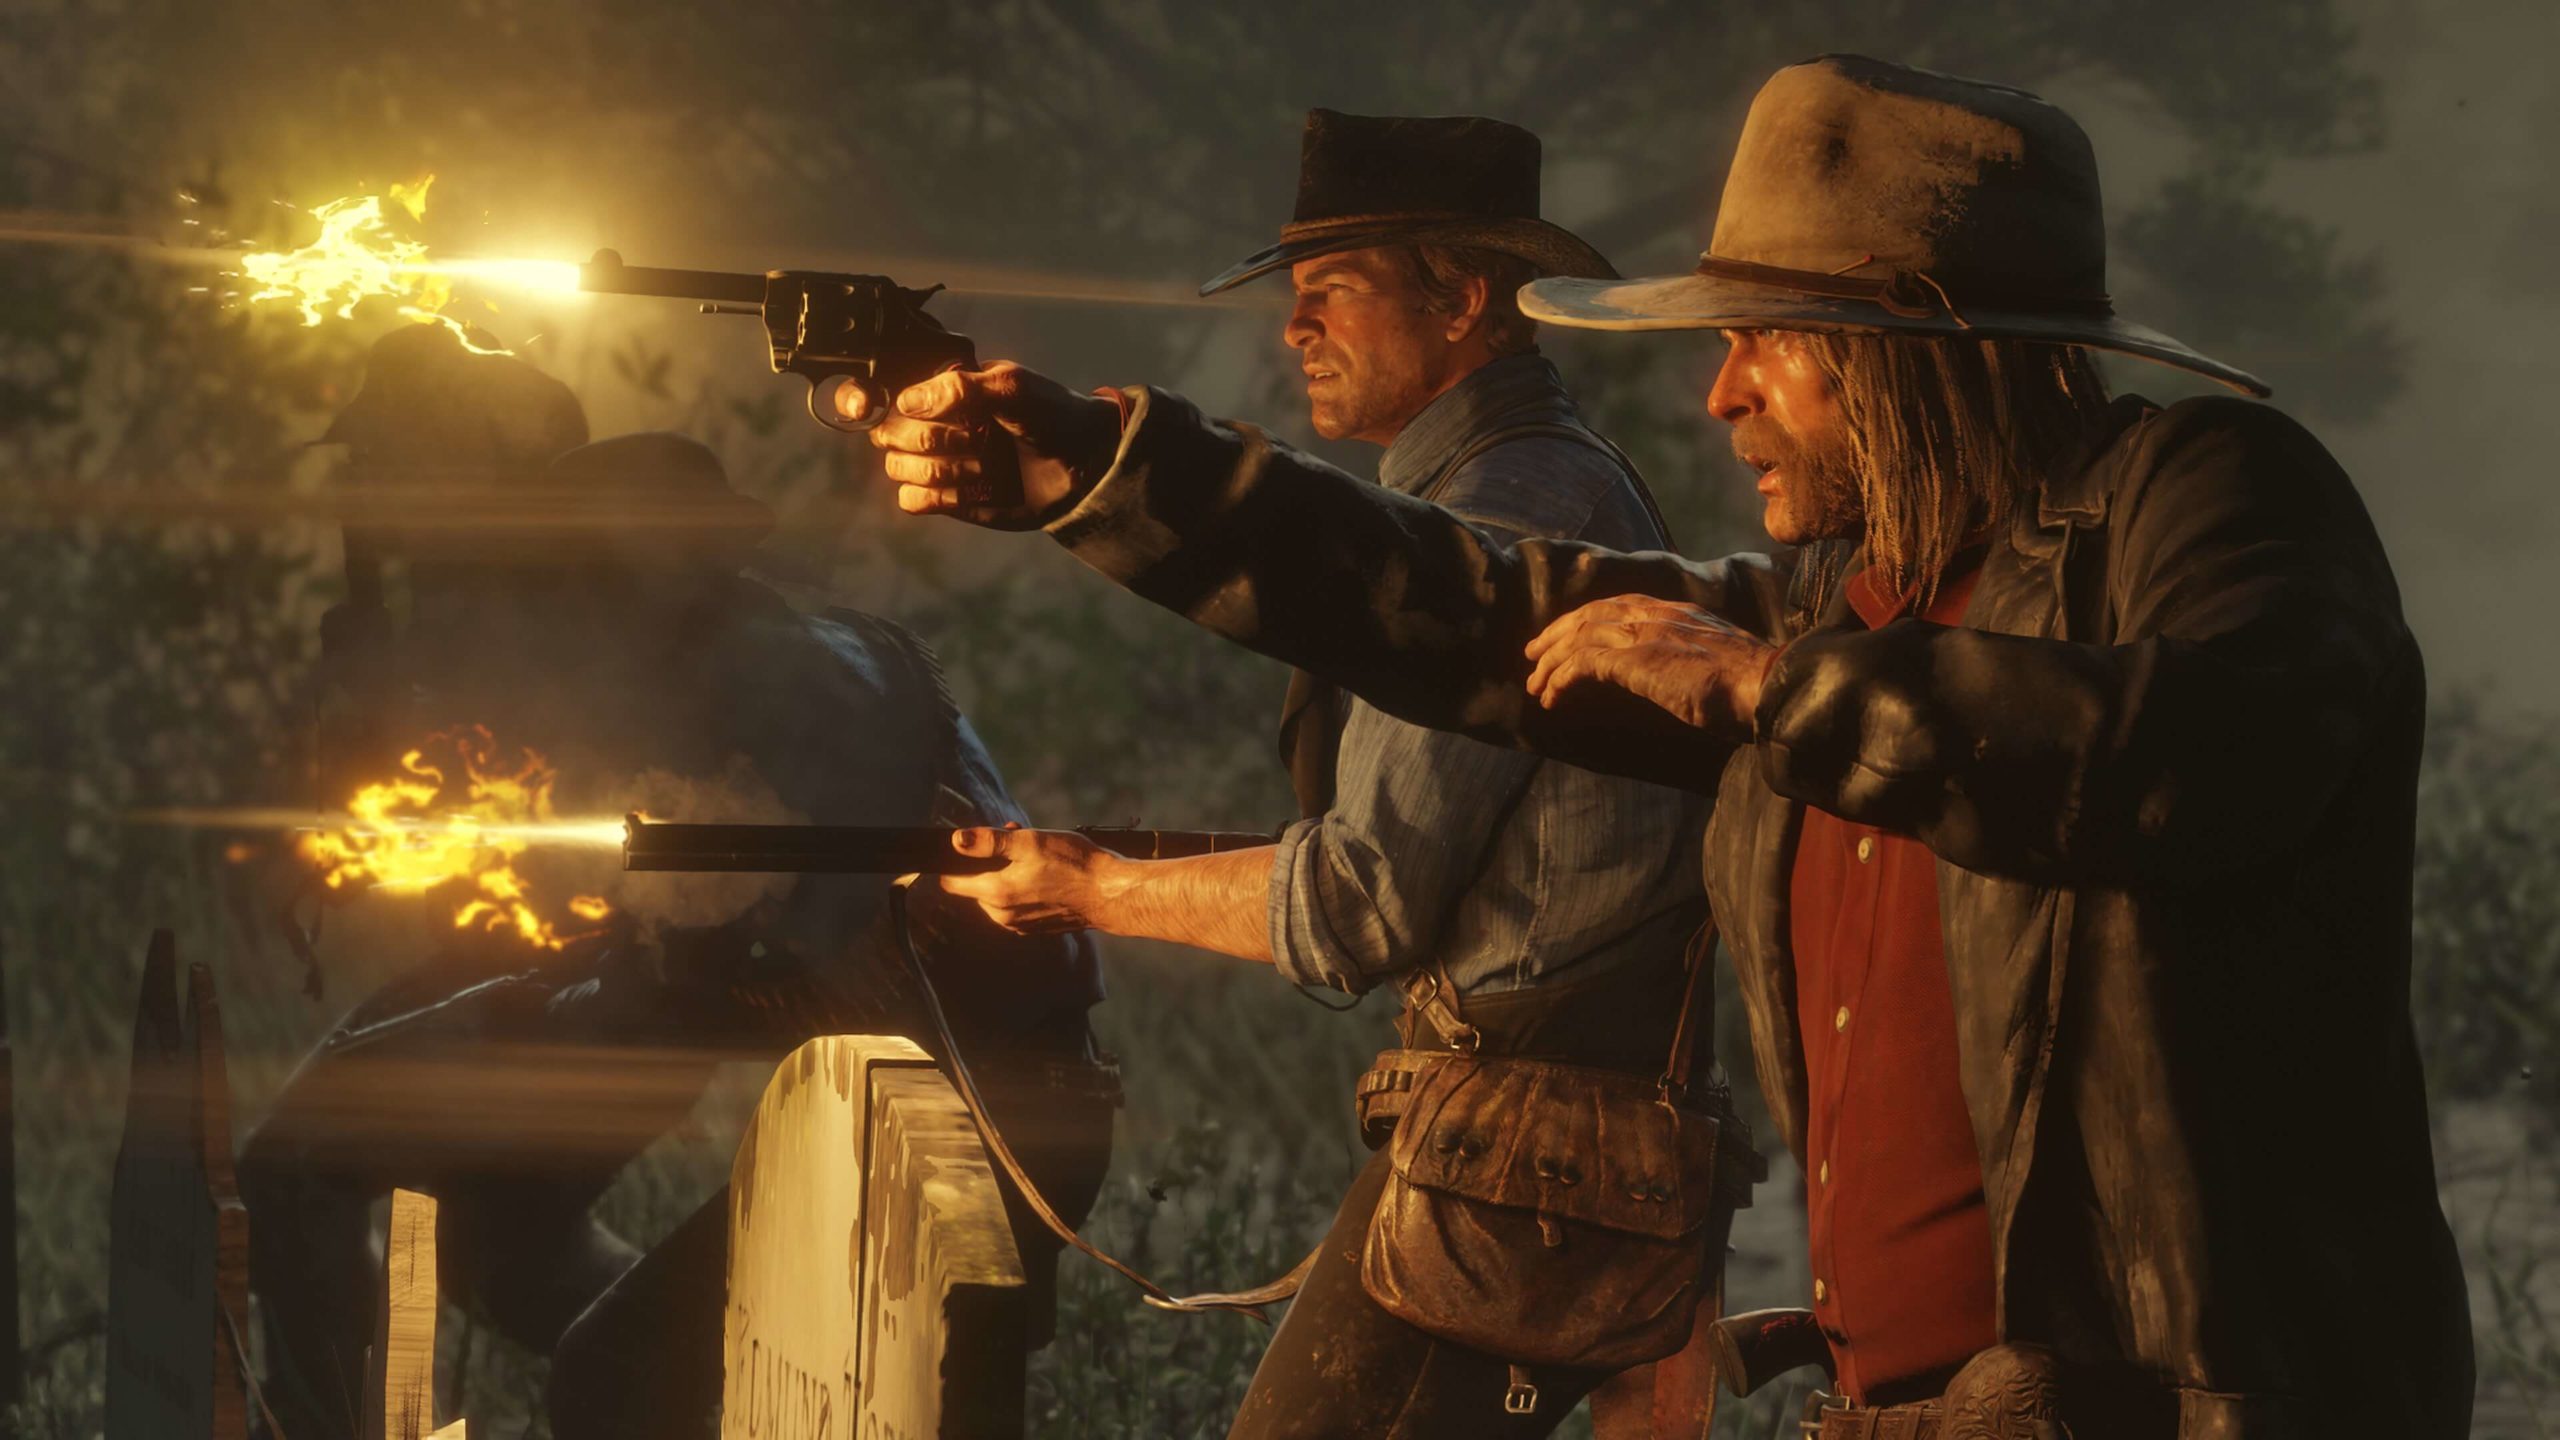 Red Dead Redemption | 4 curiosidades sobre o sucesso dos mesmos criadores de GTA